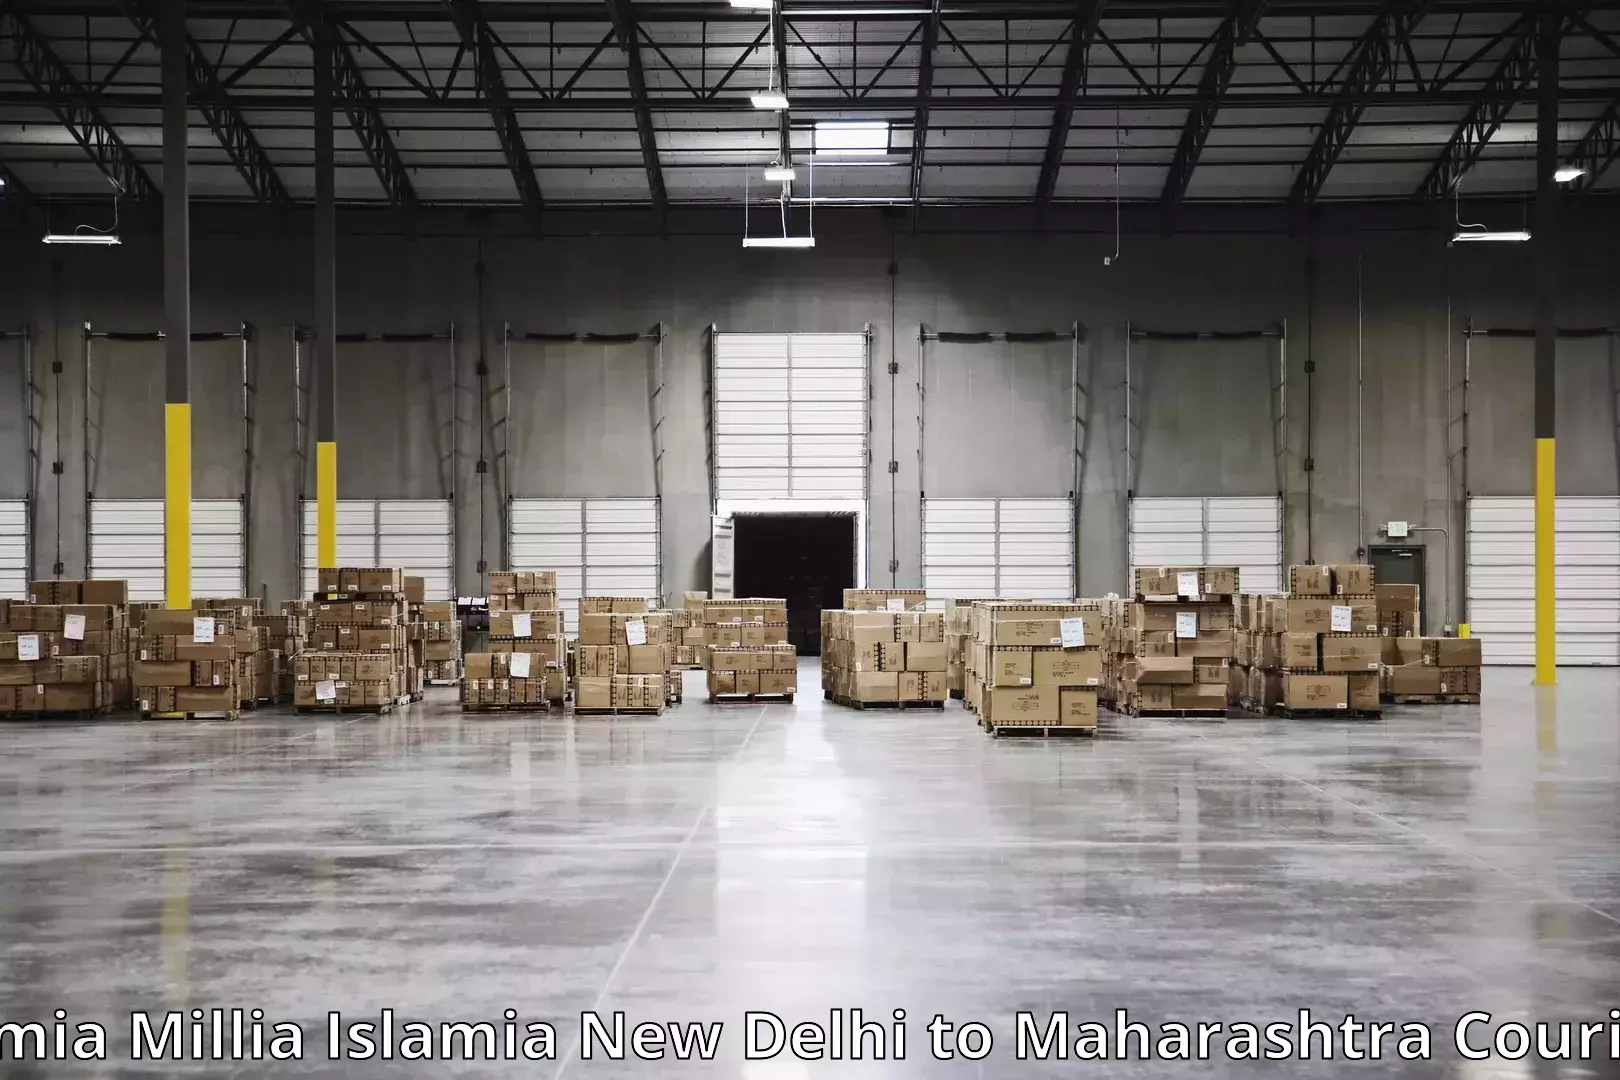 Furniture delivery service Jamia Millia Islamia New Delhi to Lonere